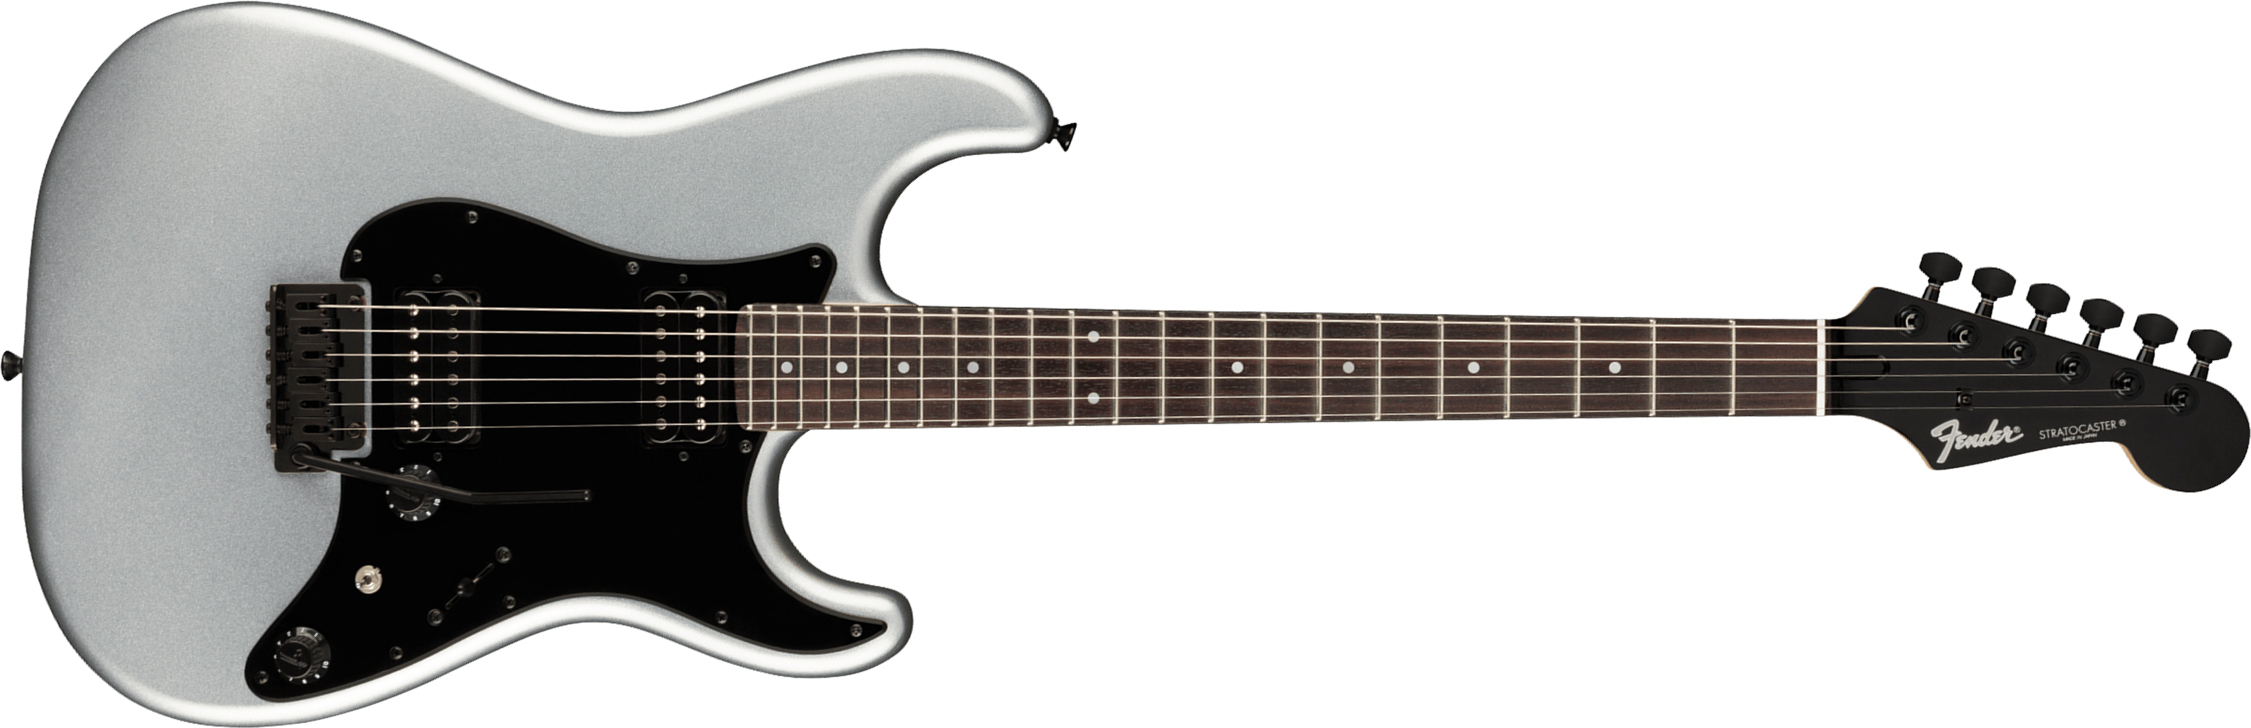 Fender Strat Boxer Hh Jap Trem Rw +housse - Inca Silver - Guitarra eléctrica con forma de str. - Main picture